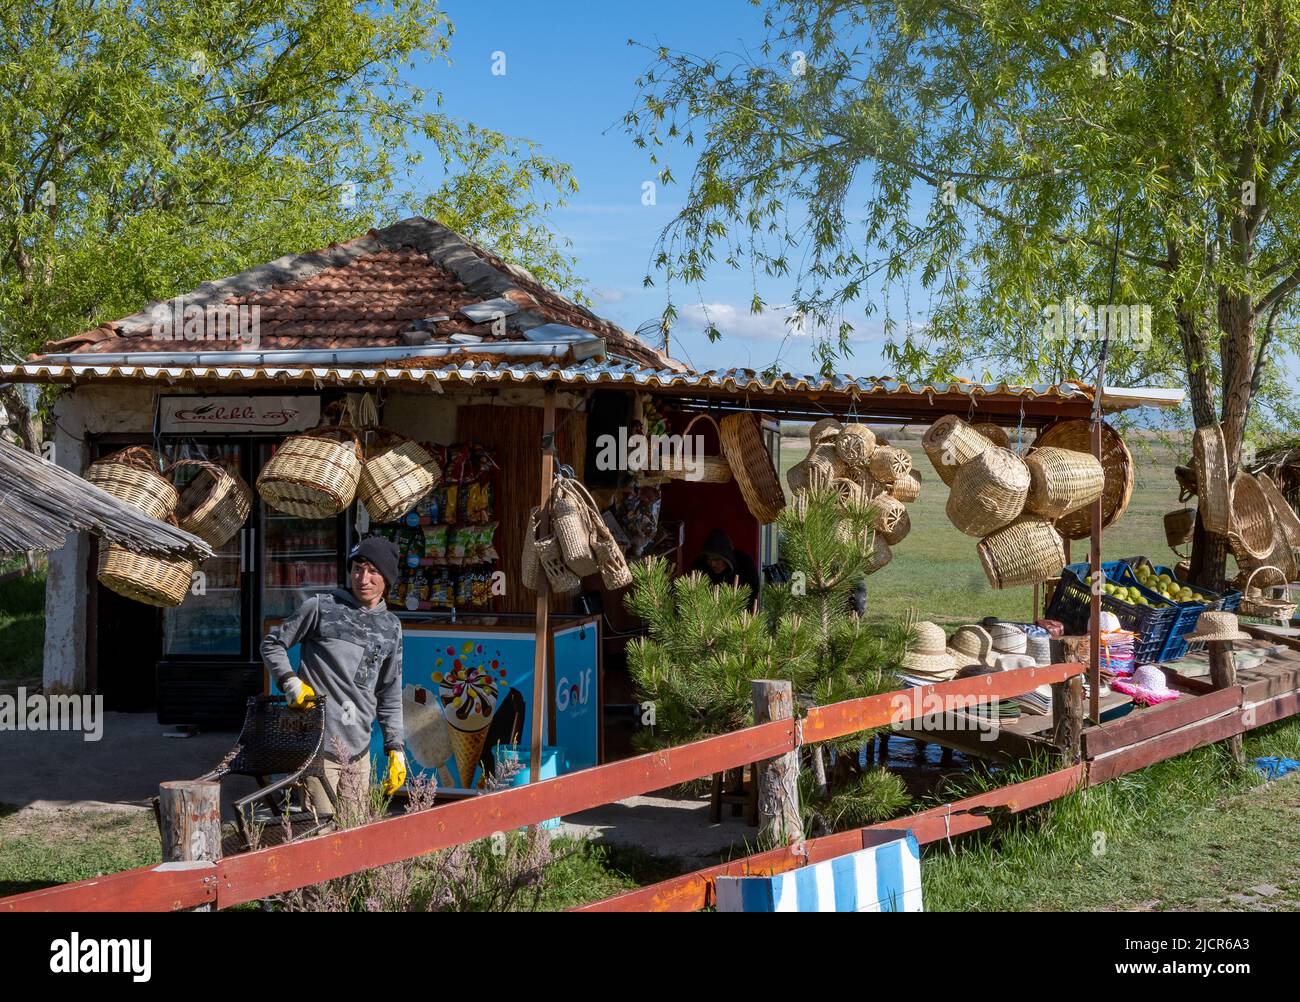 Un magasin de bord de route vendant des paniers faits à la main et d'autres choses. Türkiye. Banque D'Images